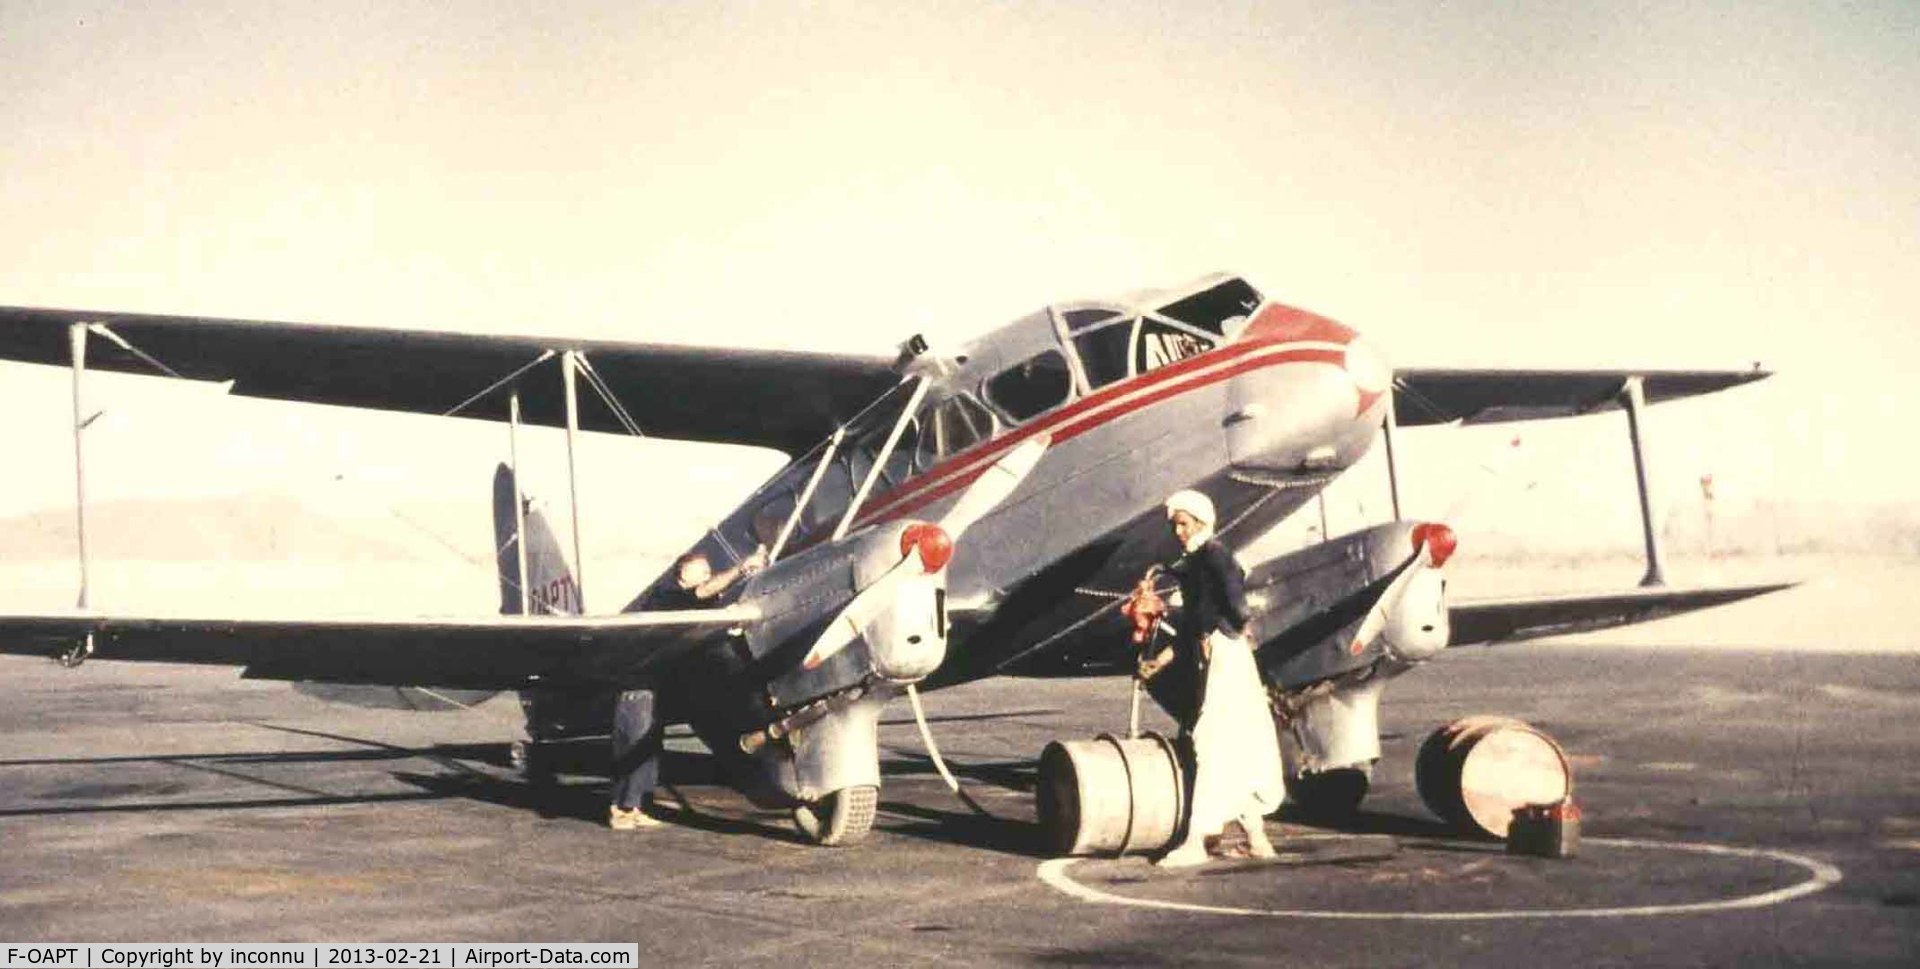 F-OAPT, 1939 De Havilland DH-89A Dragon Rapide C/N 6447, Dragon en exploitation au Sahara.
Propriétée de S.G.A.A. et exploité par C.T.A. Compagnie de Transports en Algérie